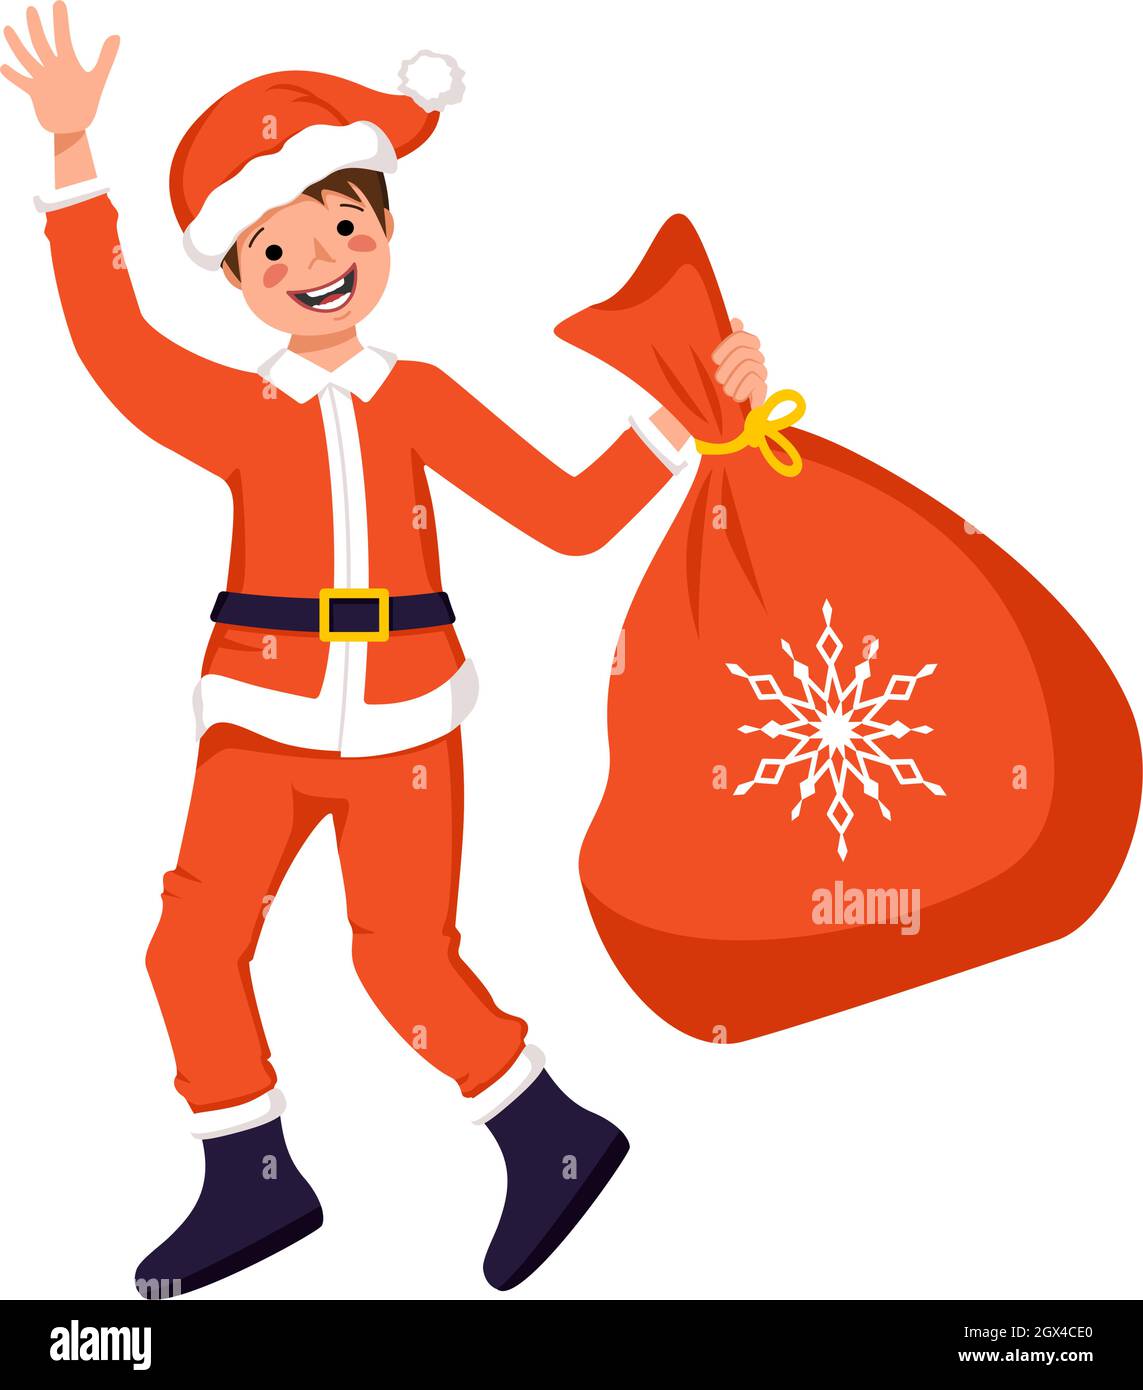 Niedlicher Junge mit glücklichem Gesicht und Augen im festlichen Weihnachtsmann oder Vater Frost Kostüm mit Geschenktüte für Weihnachten, Neujahr oder Winterurlaub Stock Vektor